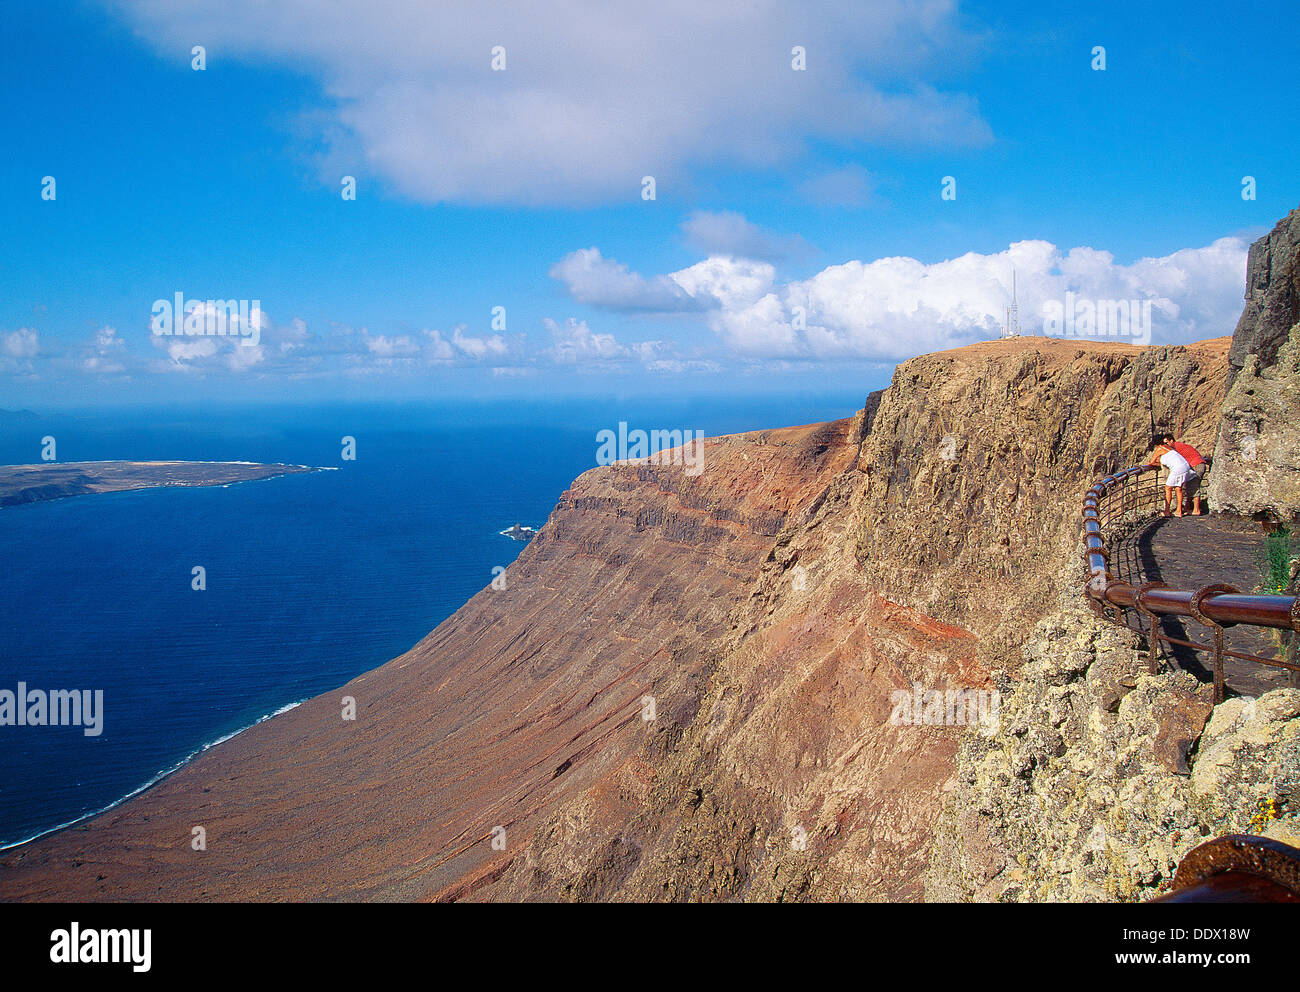 El Rio viewpoint. Lanzarote island, Canary Islands, Spain. Stock Photo